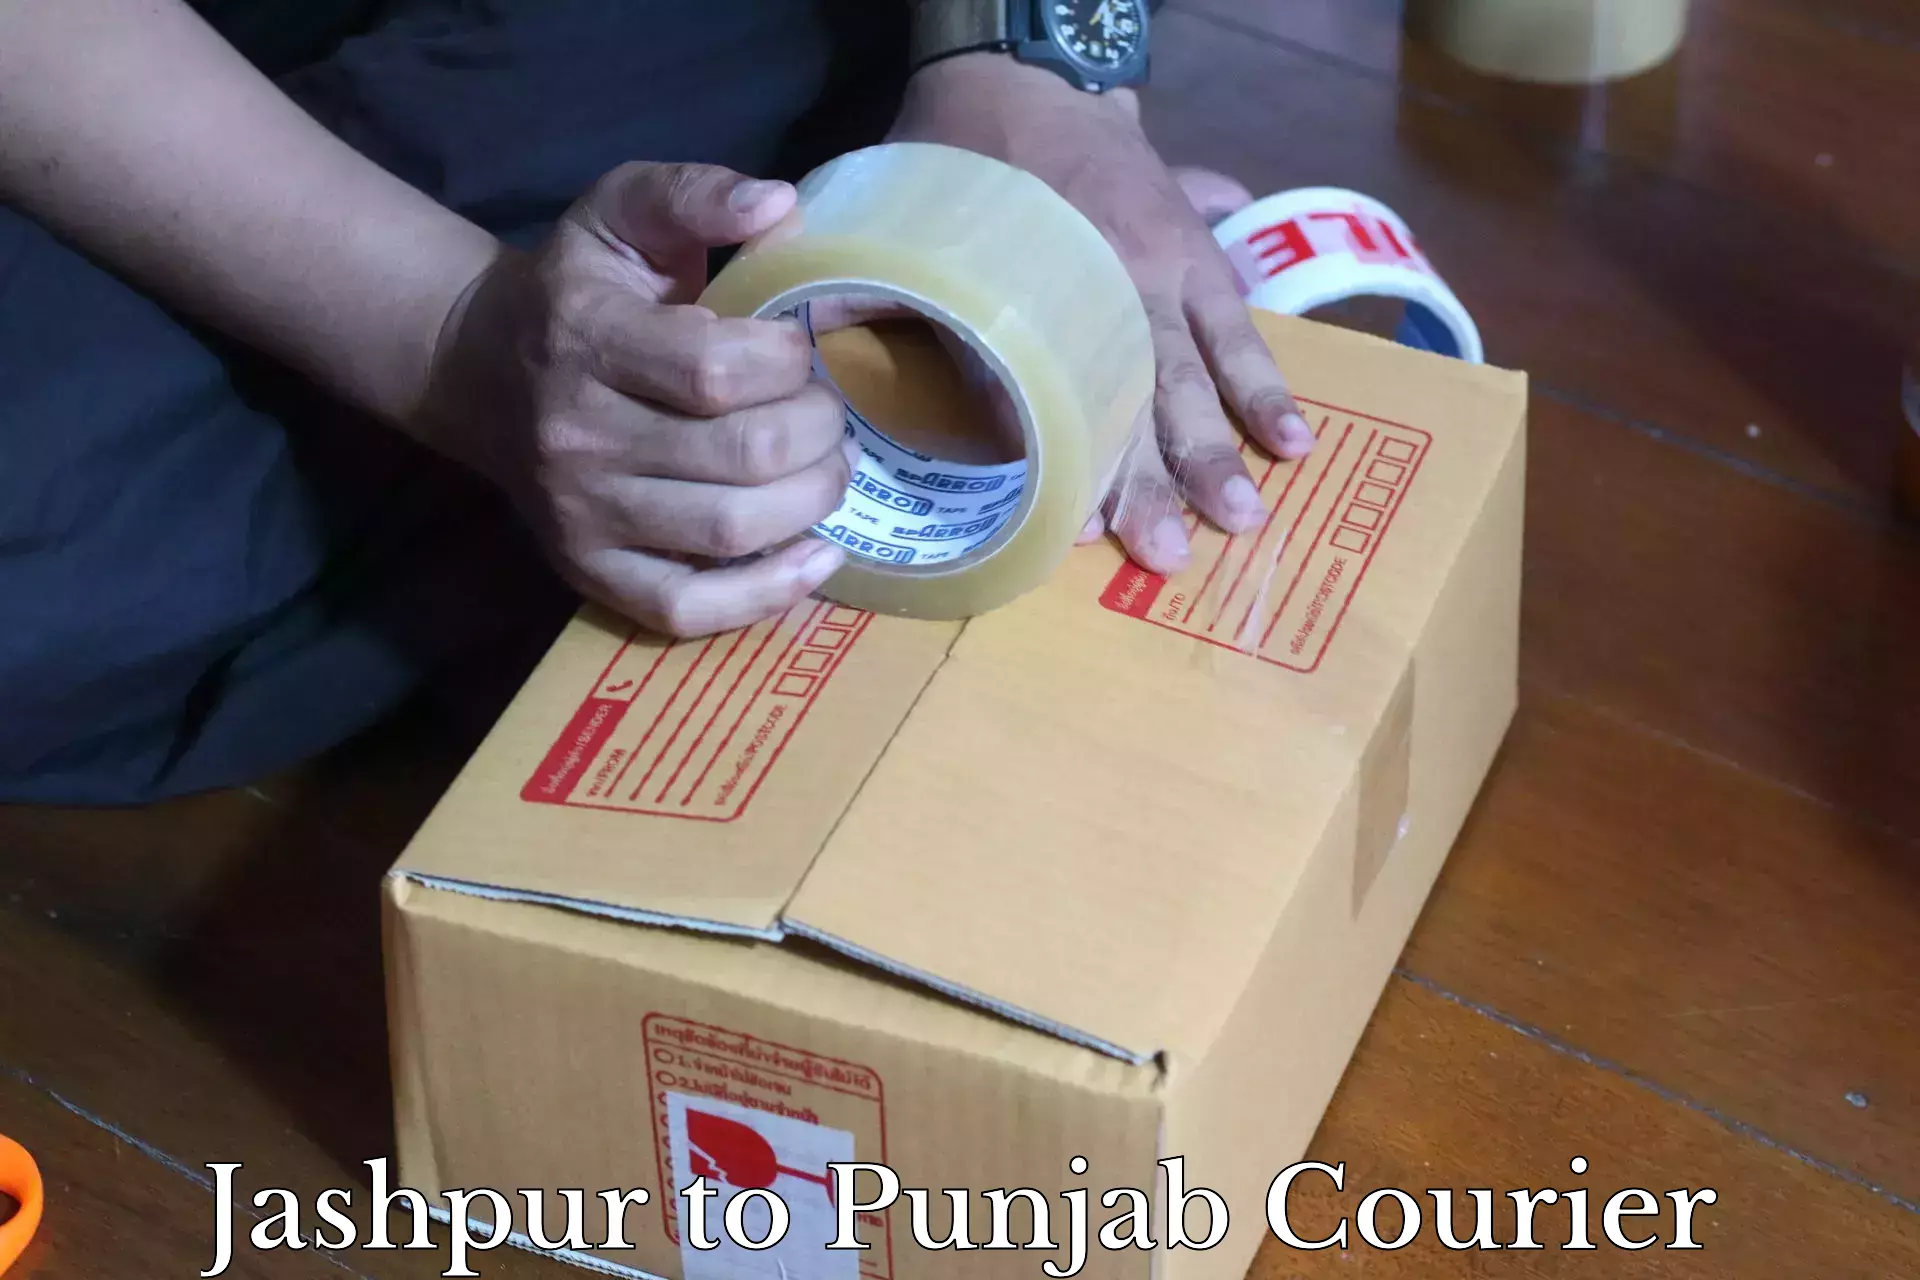 Professional courier services Jashpur to Batala